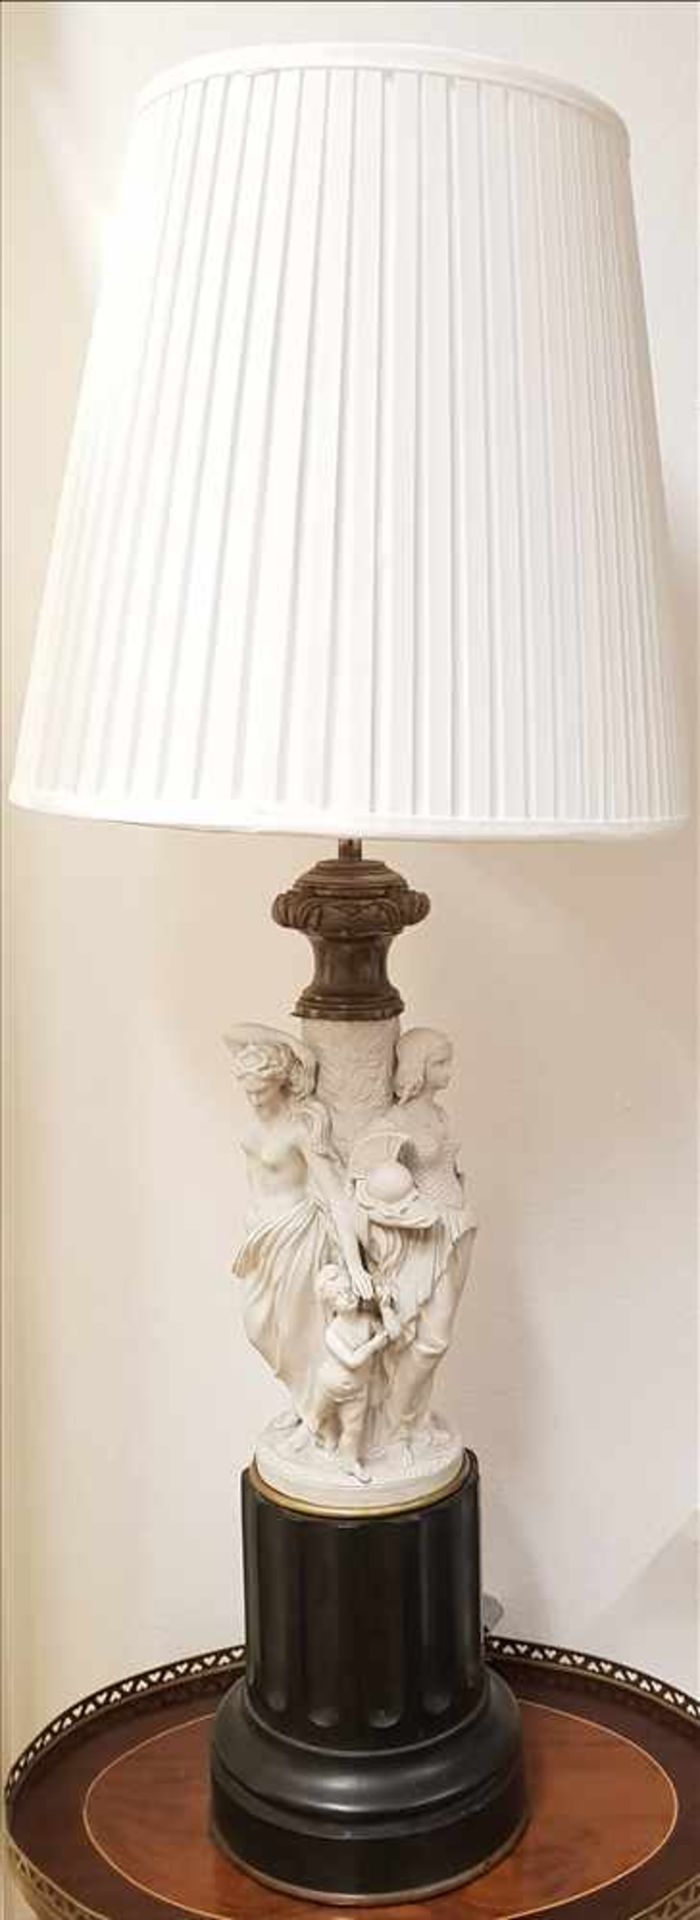 Biskiutporzelllan Lampe um 1900 mit Griechischer Darstellung, Sockel aus Schwarzen Stein (Marmor?) ,